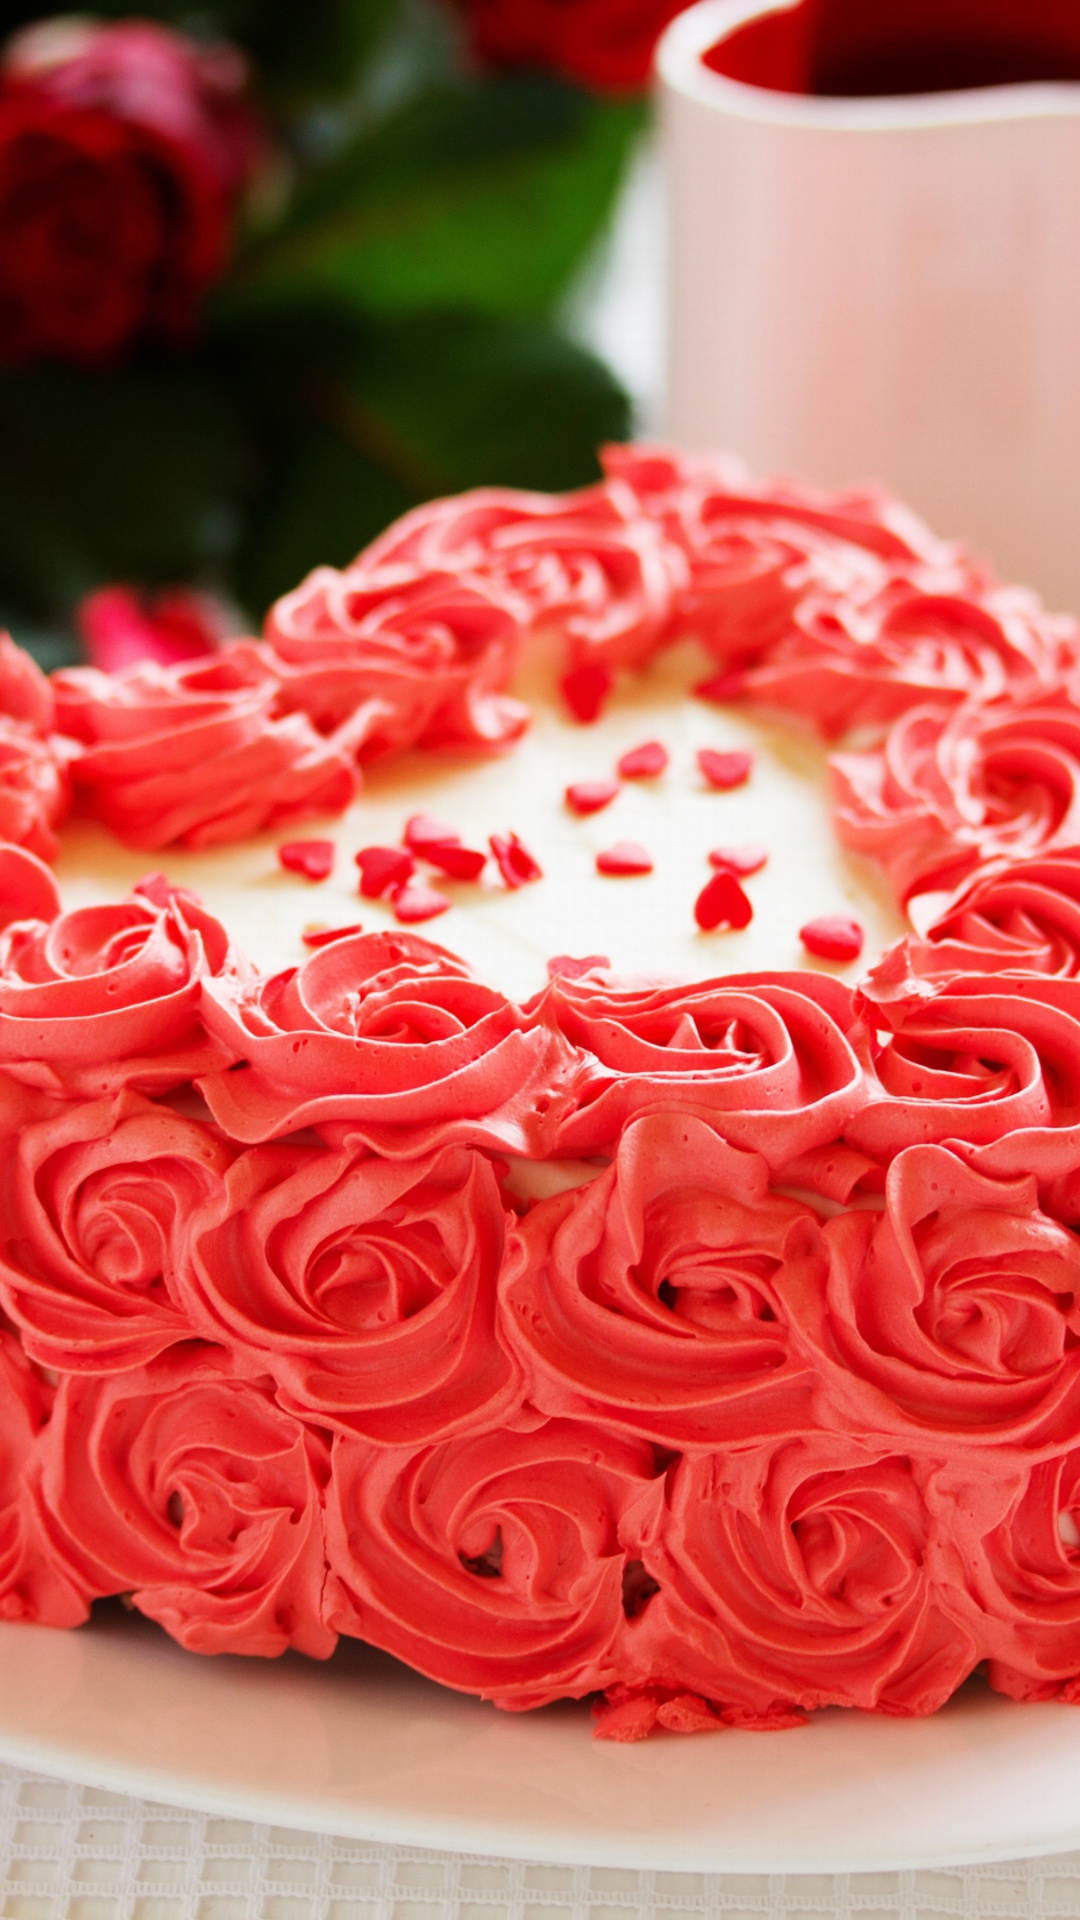 Das Sweet Red Heart Cake Wallpaper 1080x1920